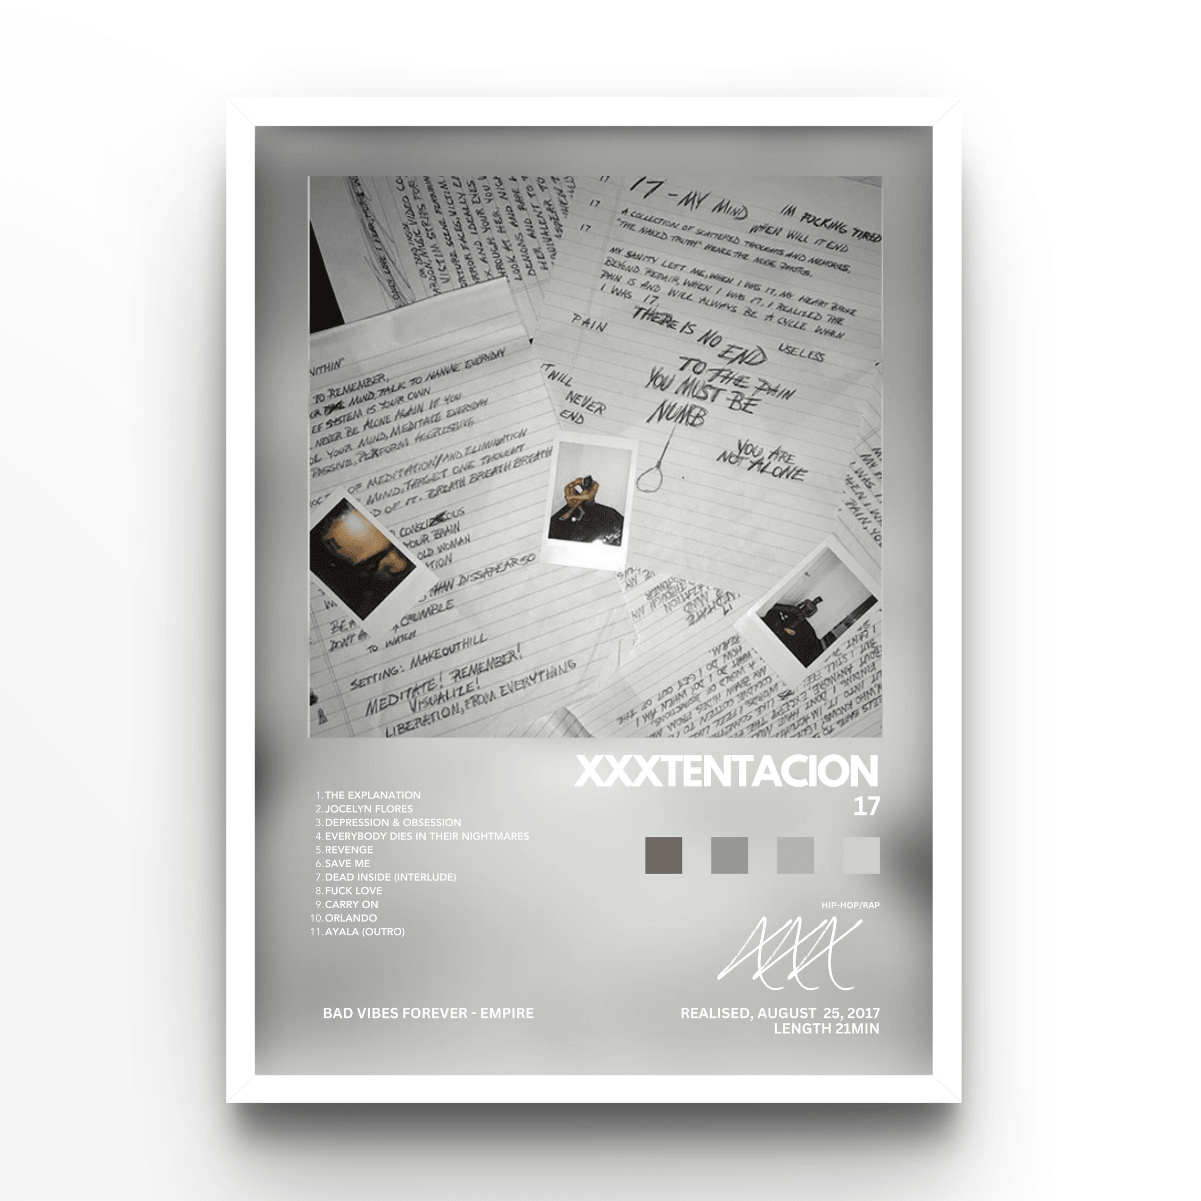 XXXTentacion 17 - A4, A3, A2 Posters Base - Poster Print Shop / Art Prints / PostersBase